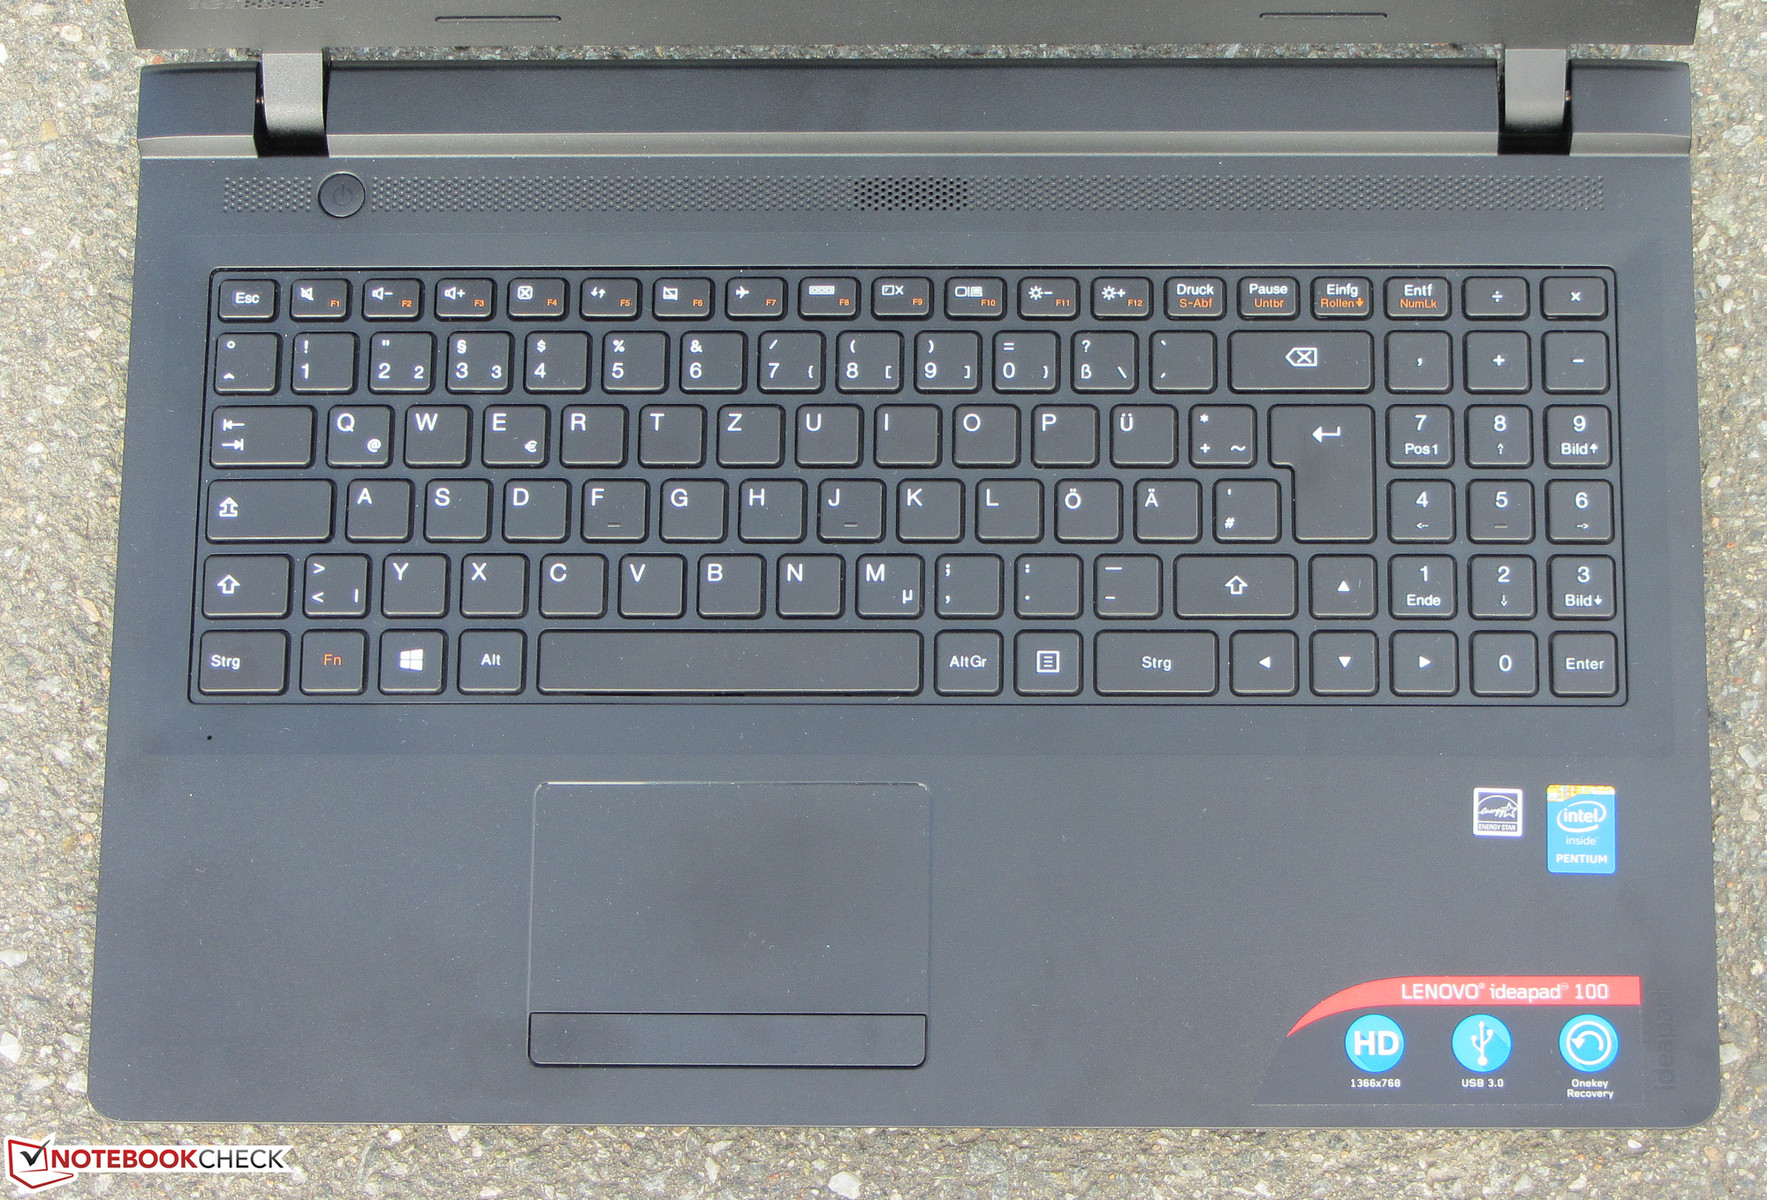 Sac Lenovo Ideadpad 100 , 110, Chính hãng _000